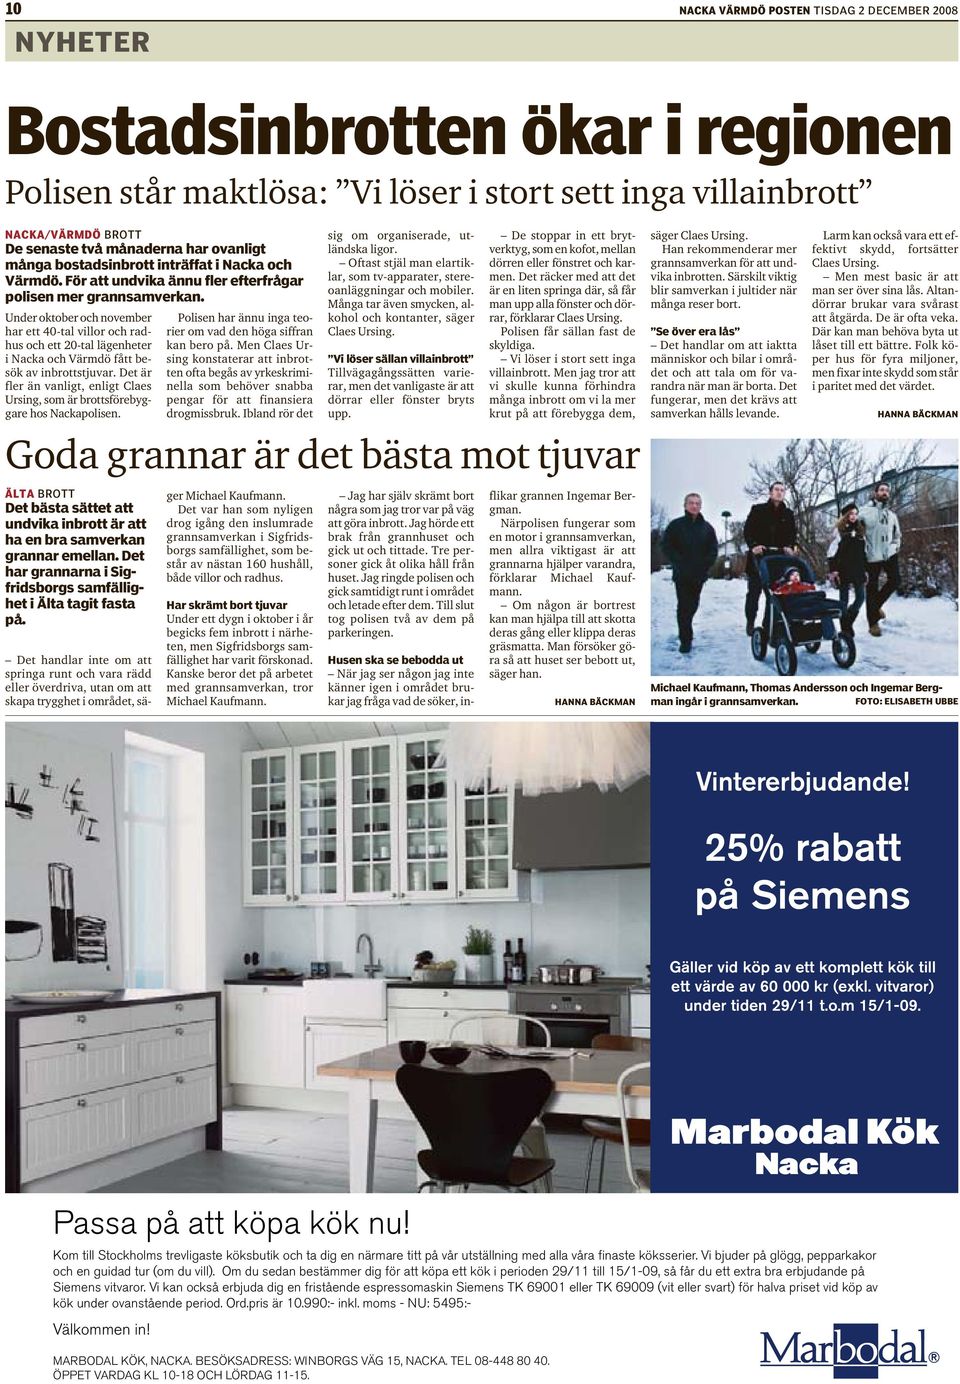 Under oktober och november har ett 40-tal villor och radhus och ett 20-tal lägenheter i Nacka och Värmdö fått besök av inbrottstjuvar.